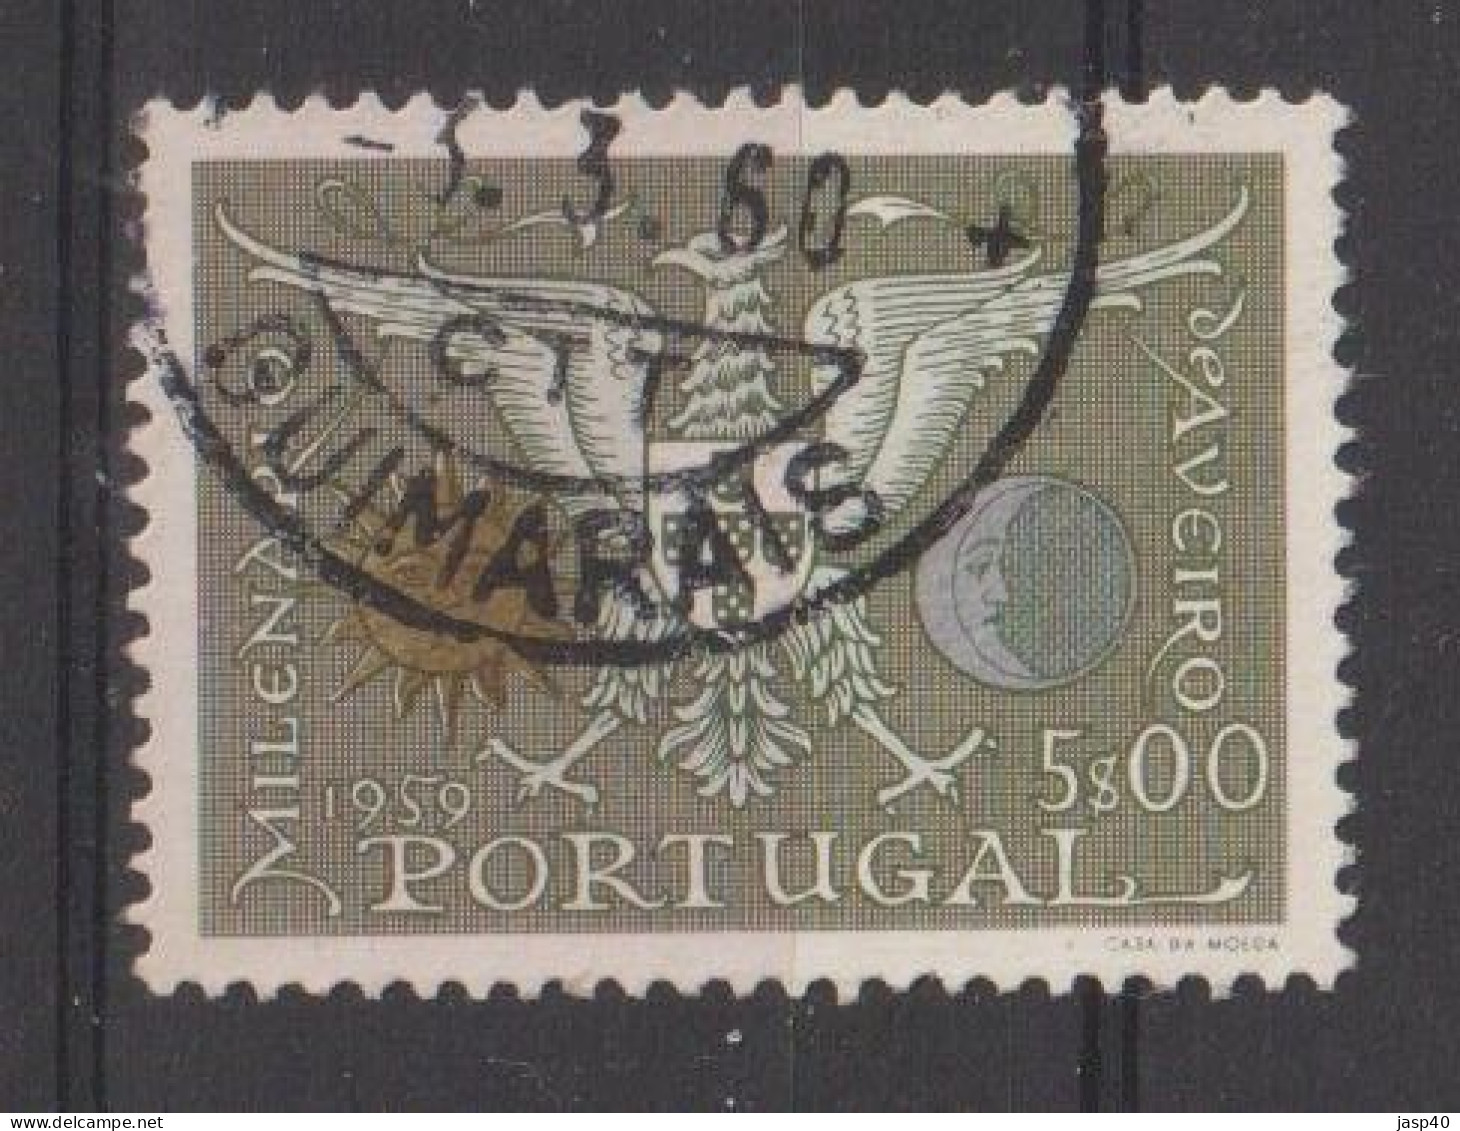 PORTUGAL 848 - POSTMARKS OF PORTUGAL - GUIMARÃES - Oblitérés